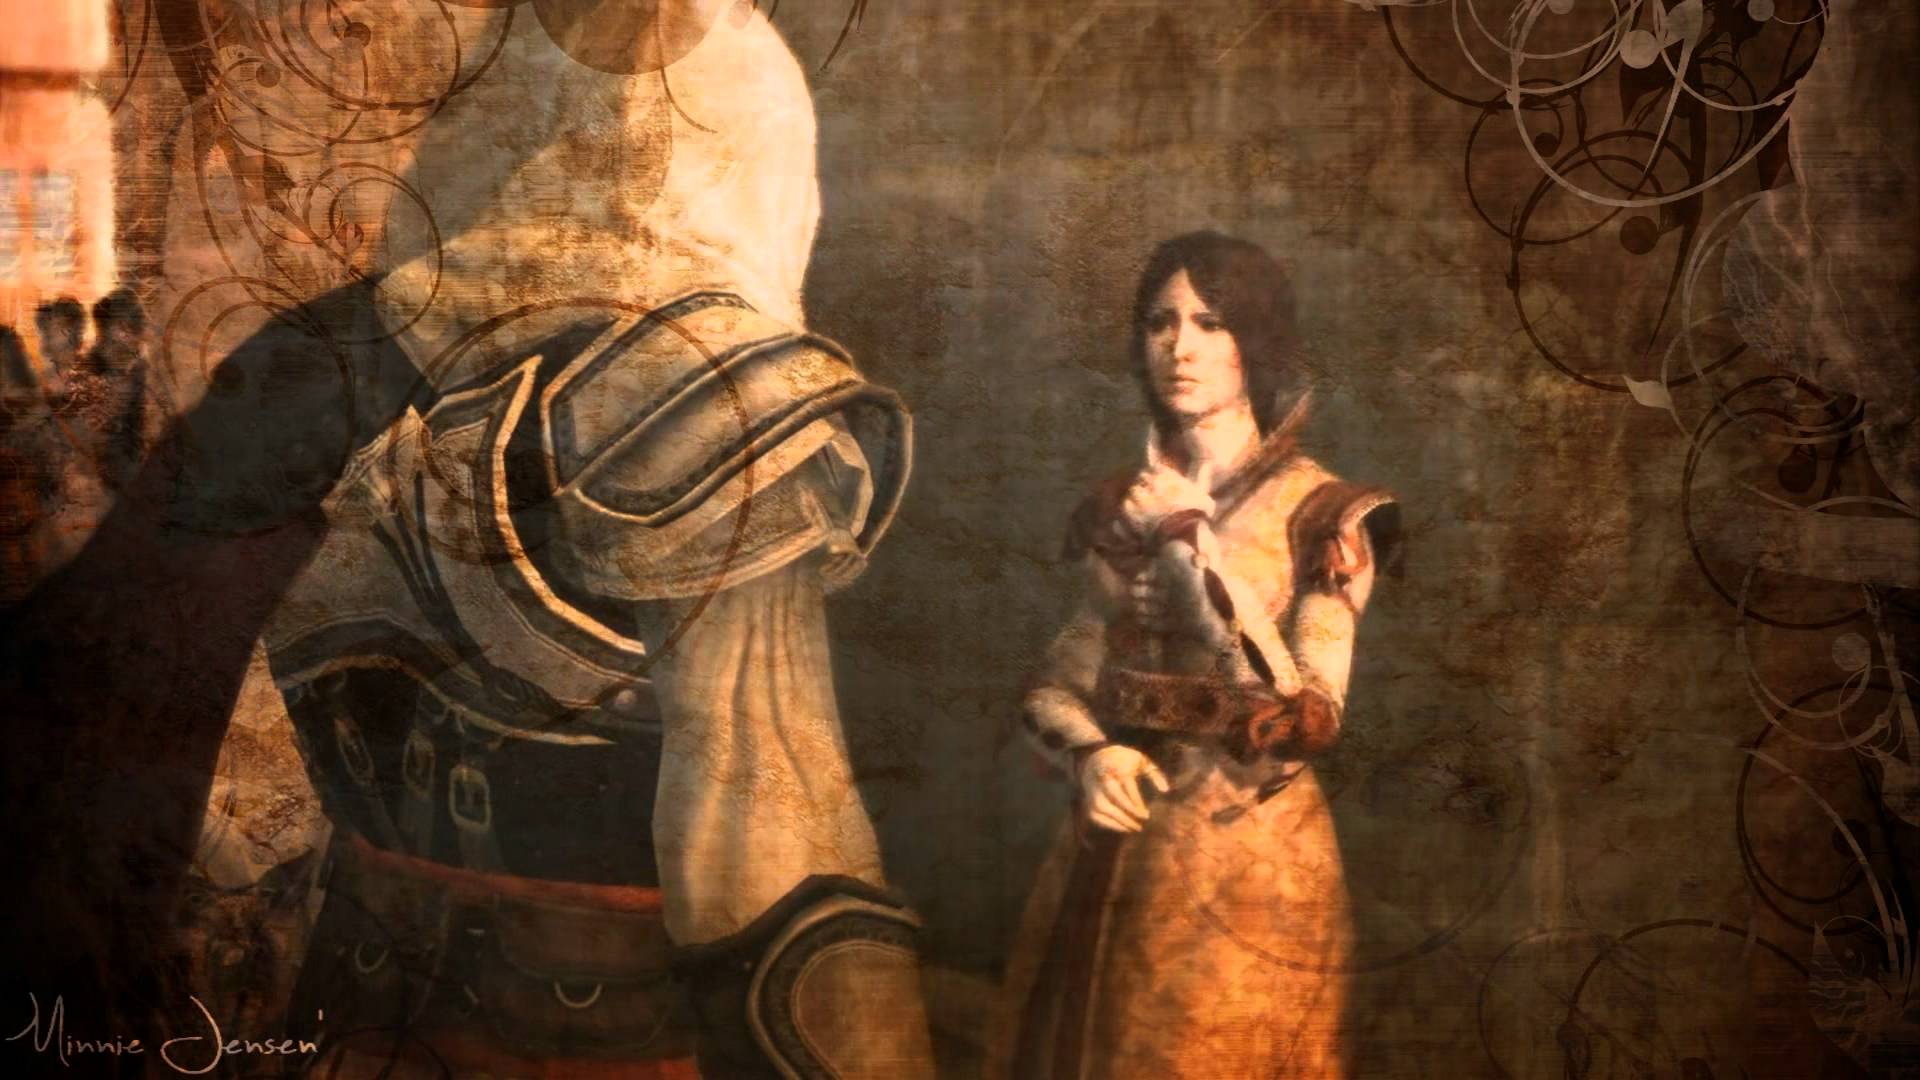 Đánh giá Assassin’s Creed Brotherhood - chương thứ hai của cuộc đời Ezio